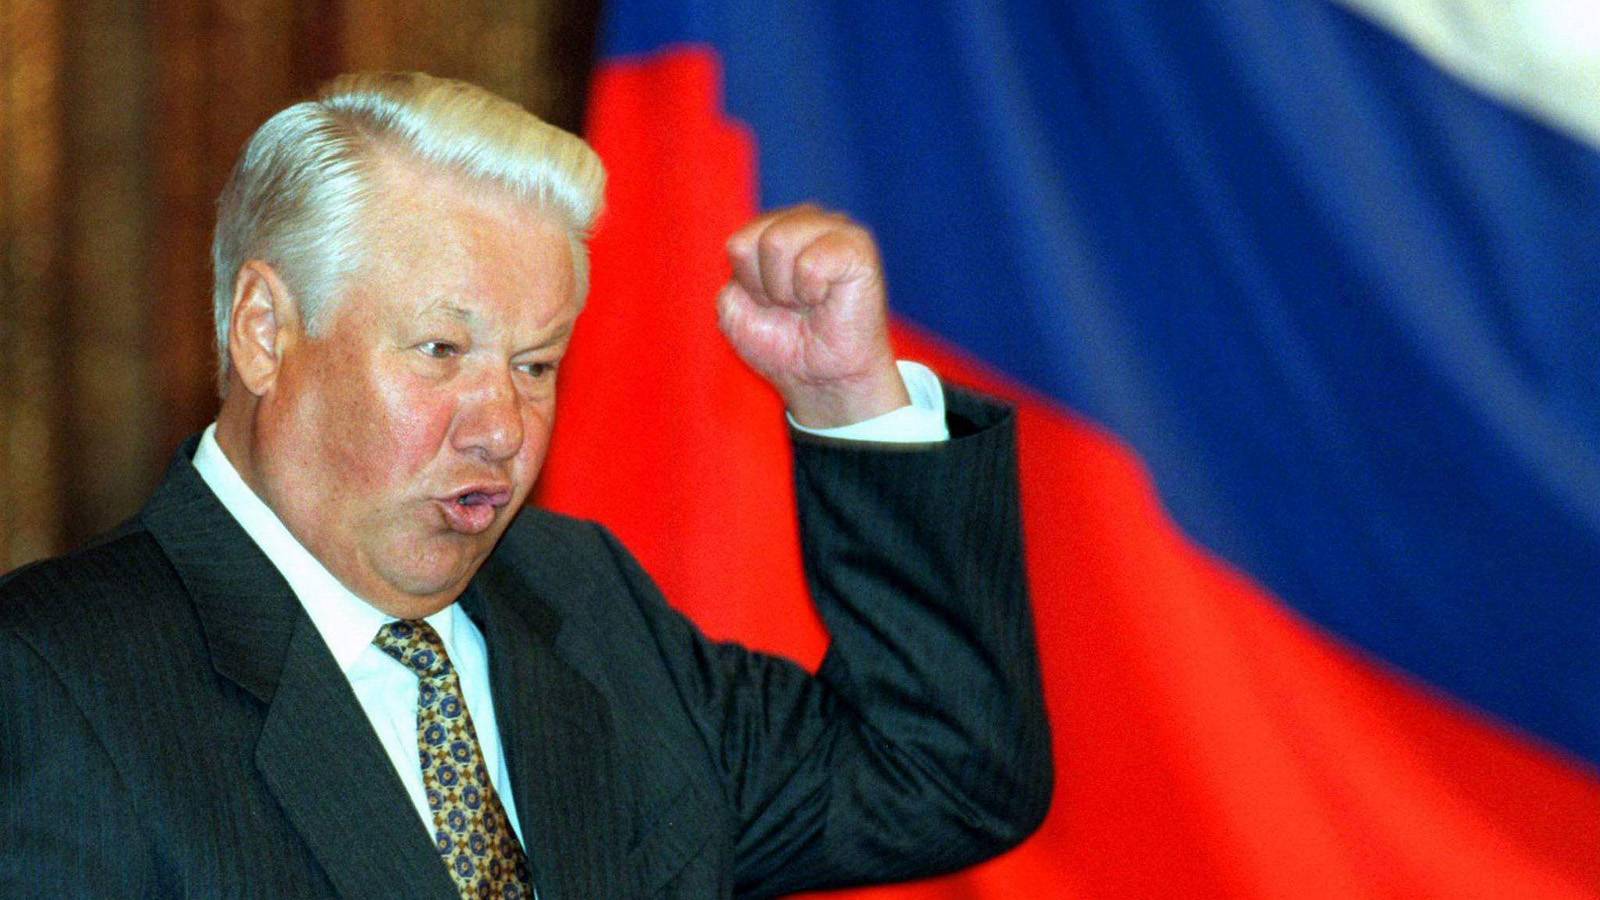 Ельцин - биография, реформы, правление президента